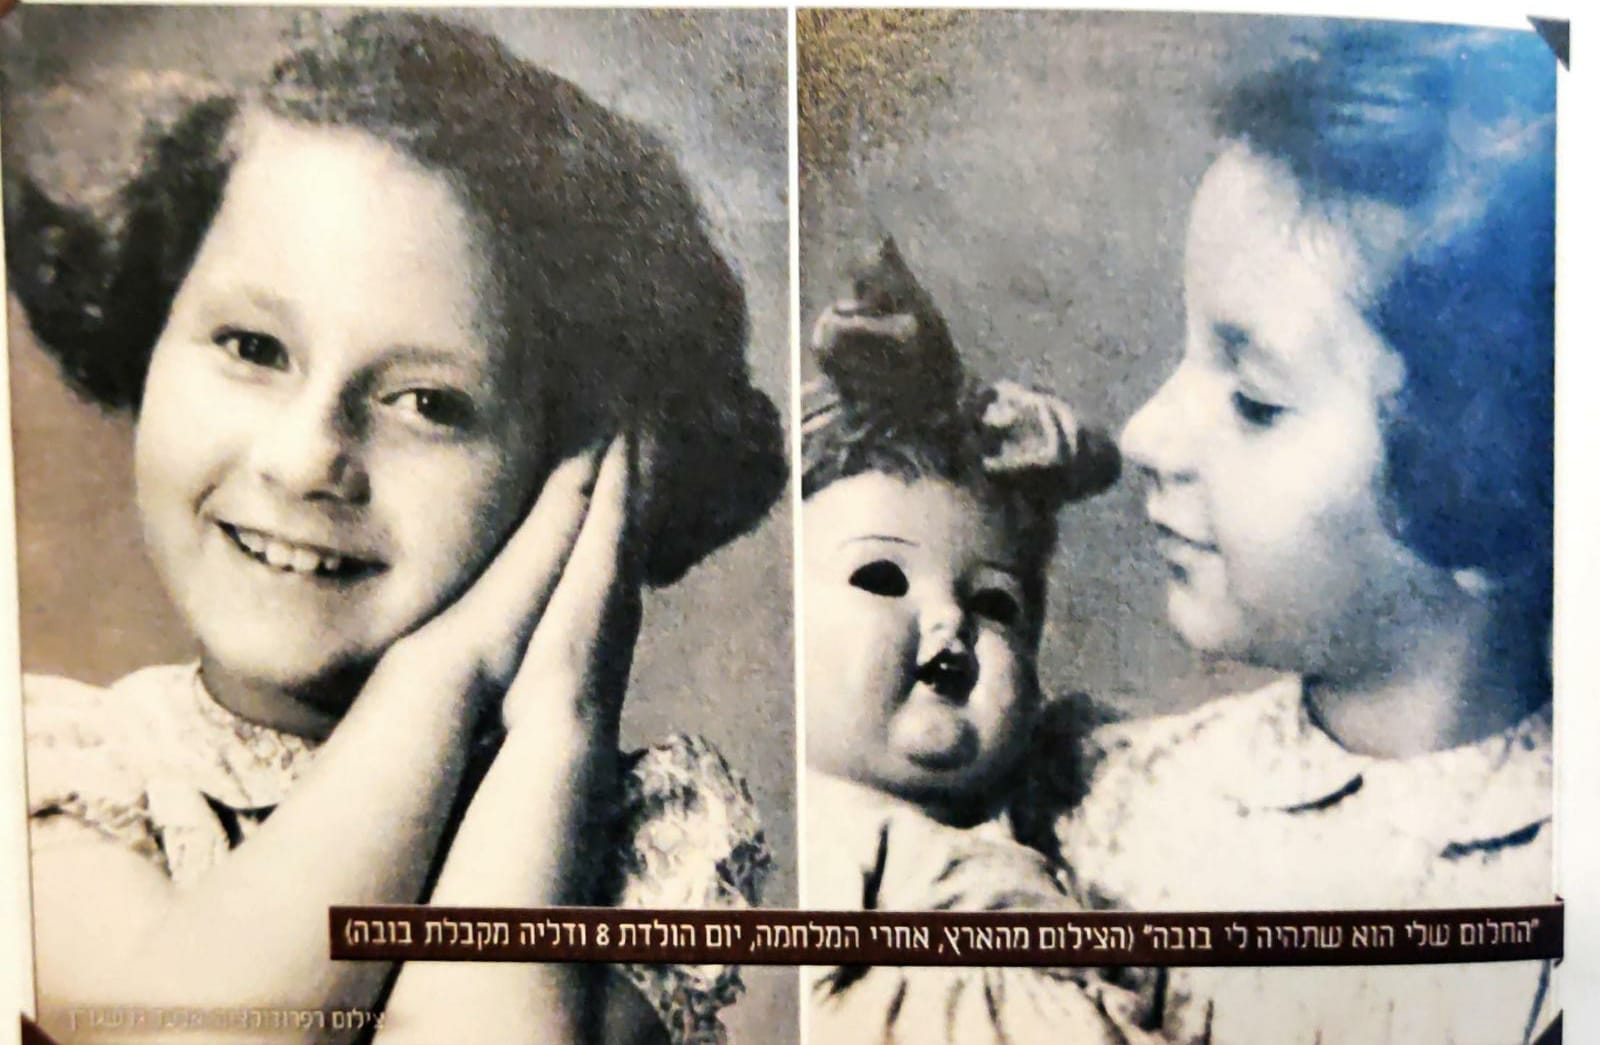 Dalia an ihrem achten Geburtstag, als sie eine Puppe als Geschenk erhält. Dieses Bild wurde in Eretz Israel etwa fünf Monate nach Kriegsende aufgenommen.